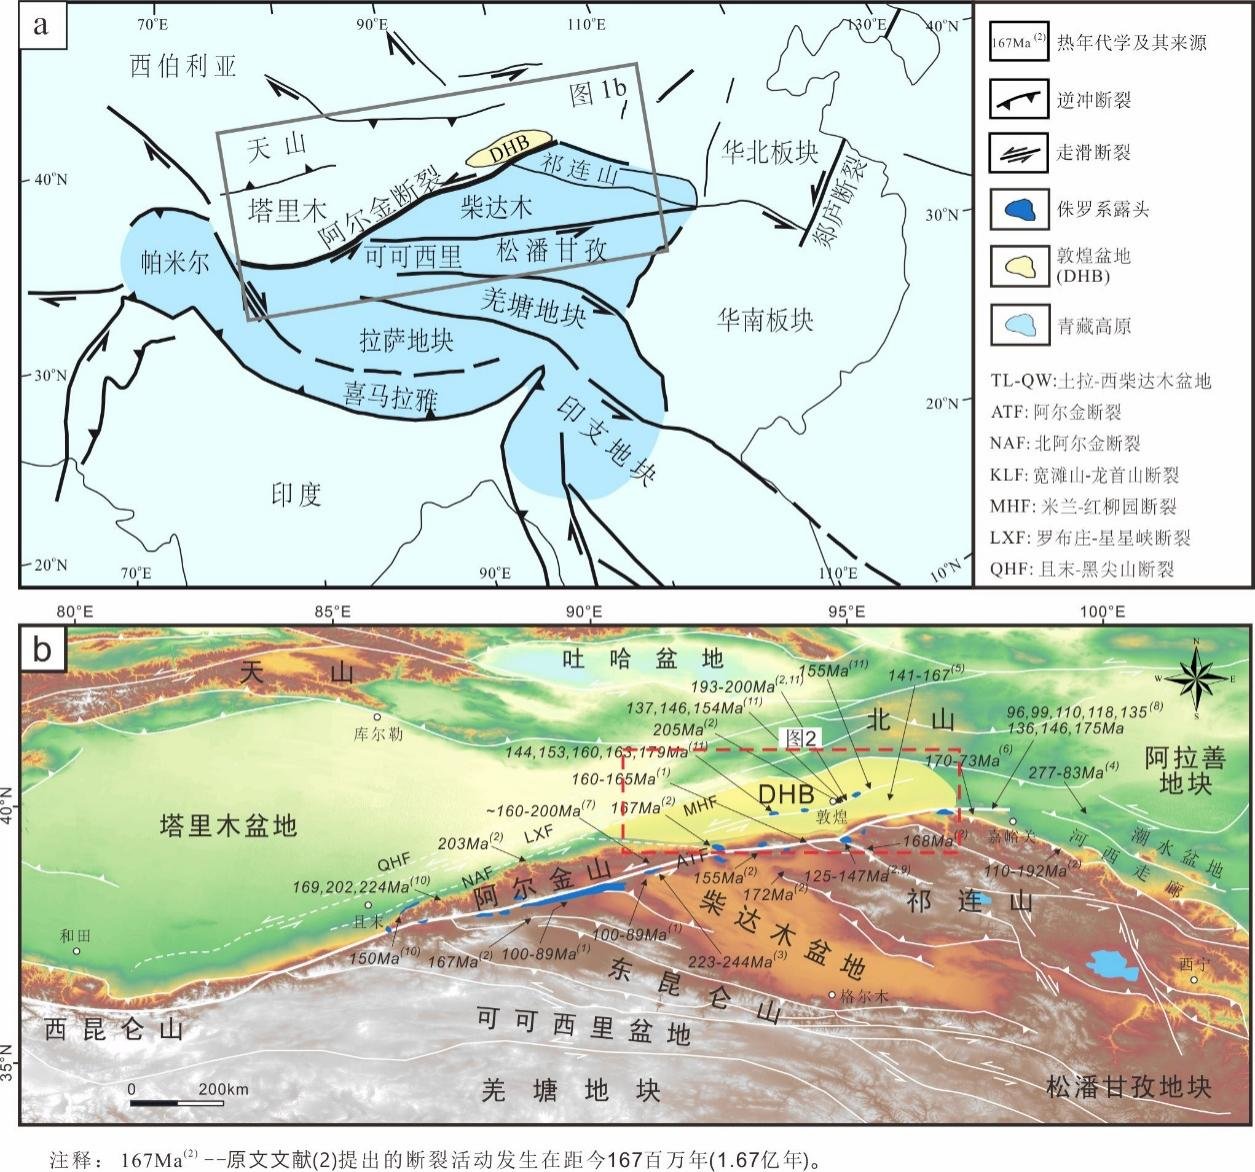 图1.青藏高原及敦煌盆地地质简图，示阿尔金断裂分割西北重要地貌单元及资源富集区带。